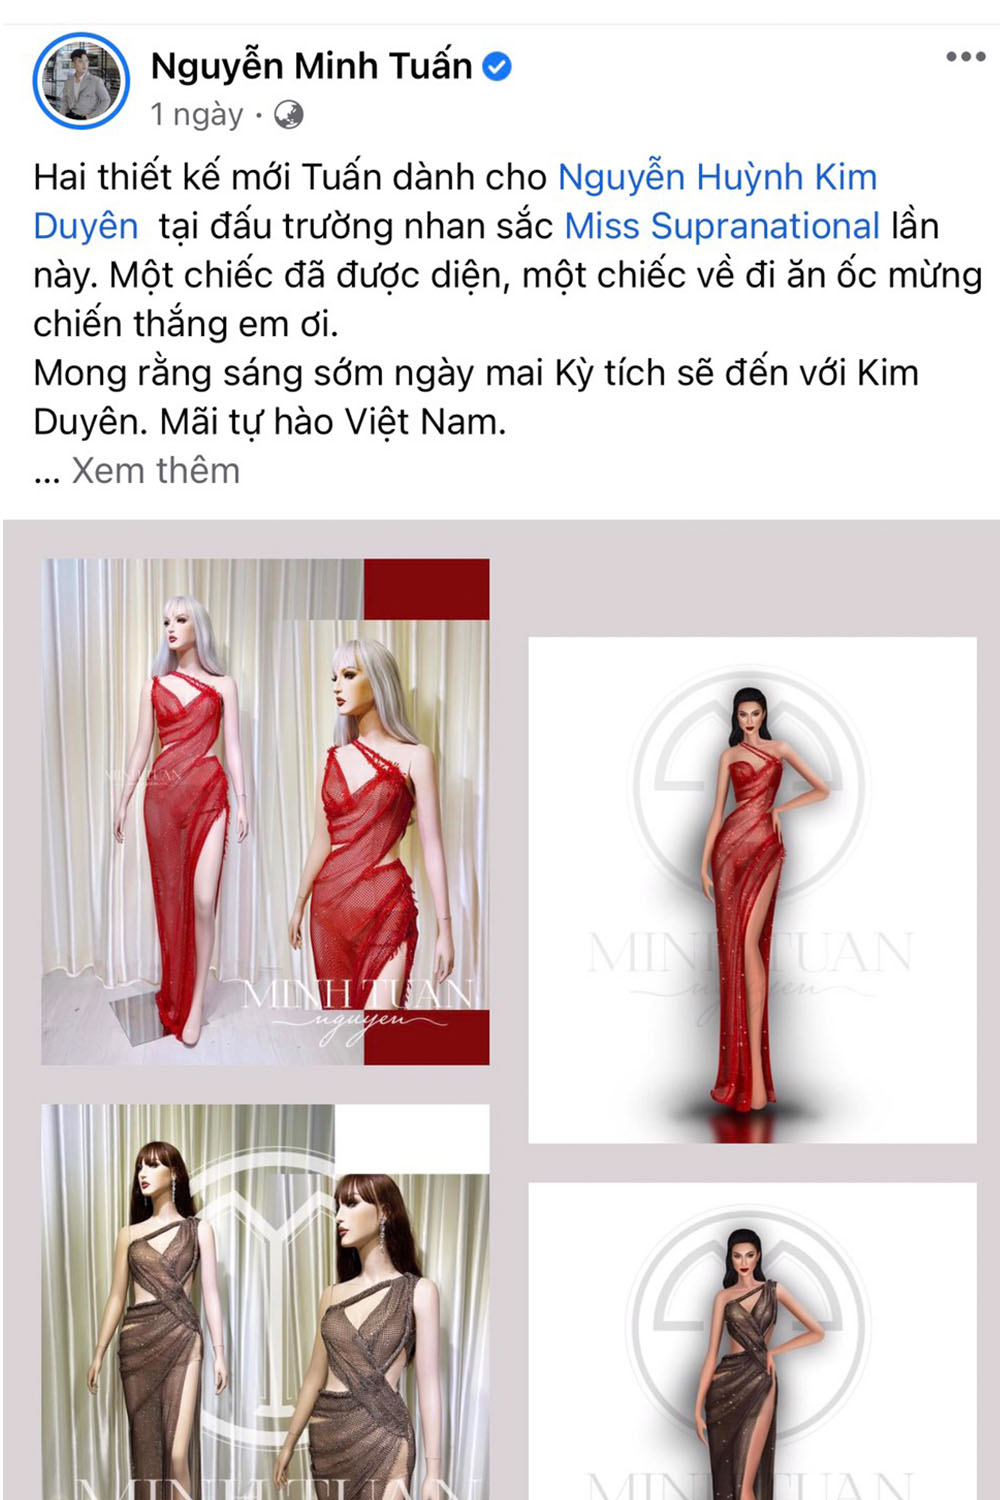 Harper's Bazaar_Şira Sahilli trong trang phục nhà thiết kế Nguyễn Minh Tuấn_03